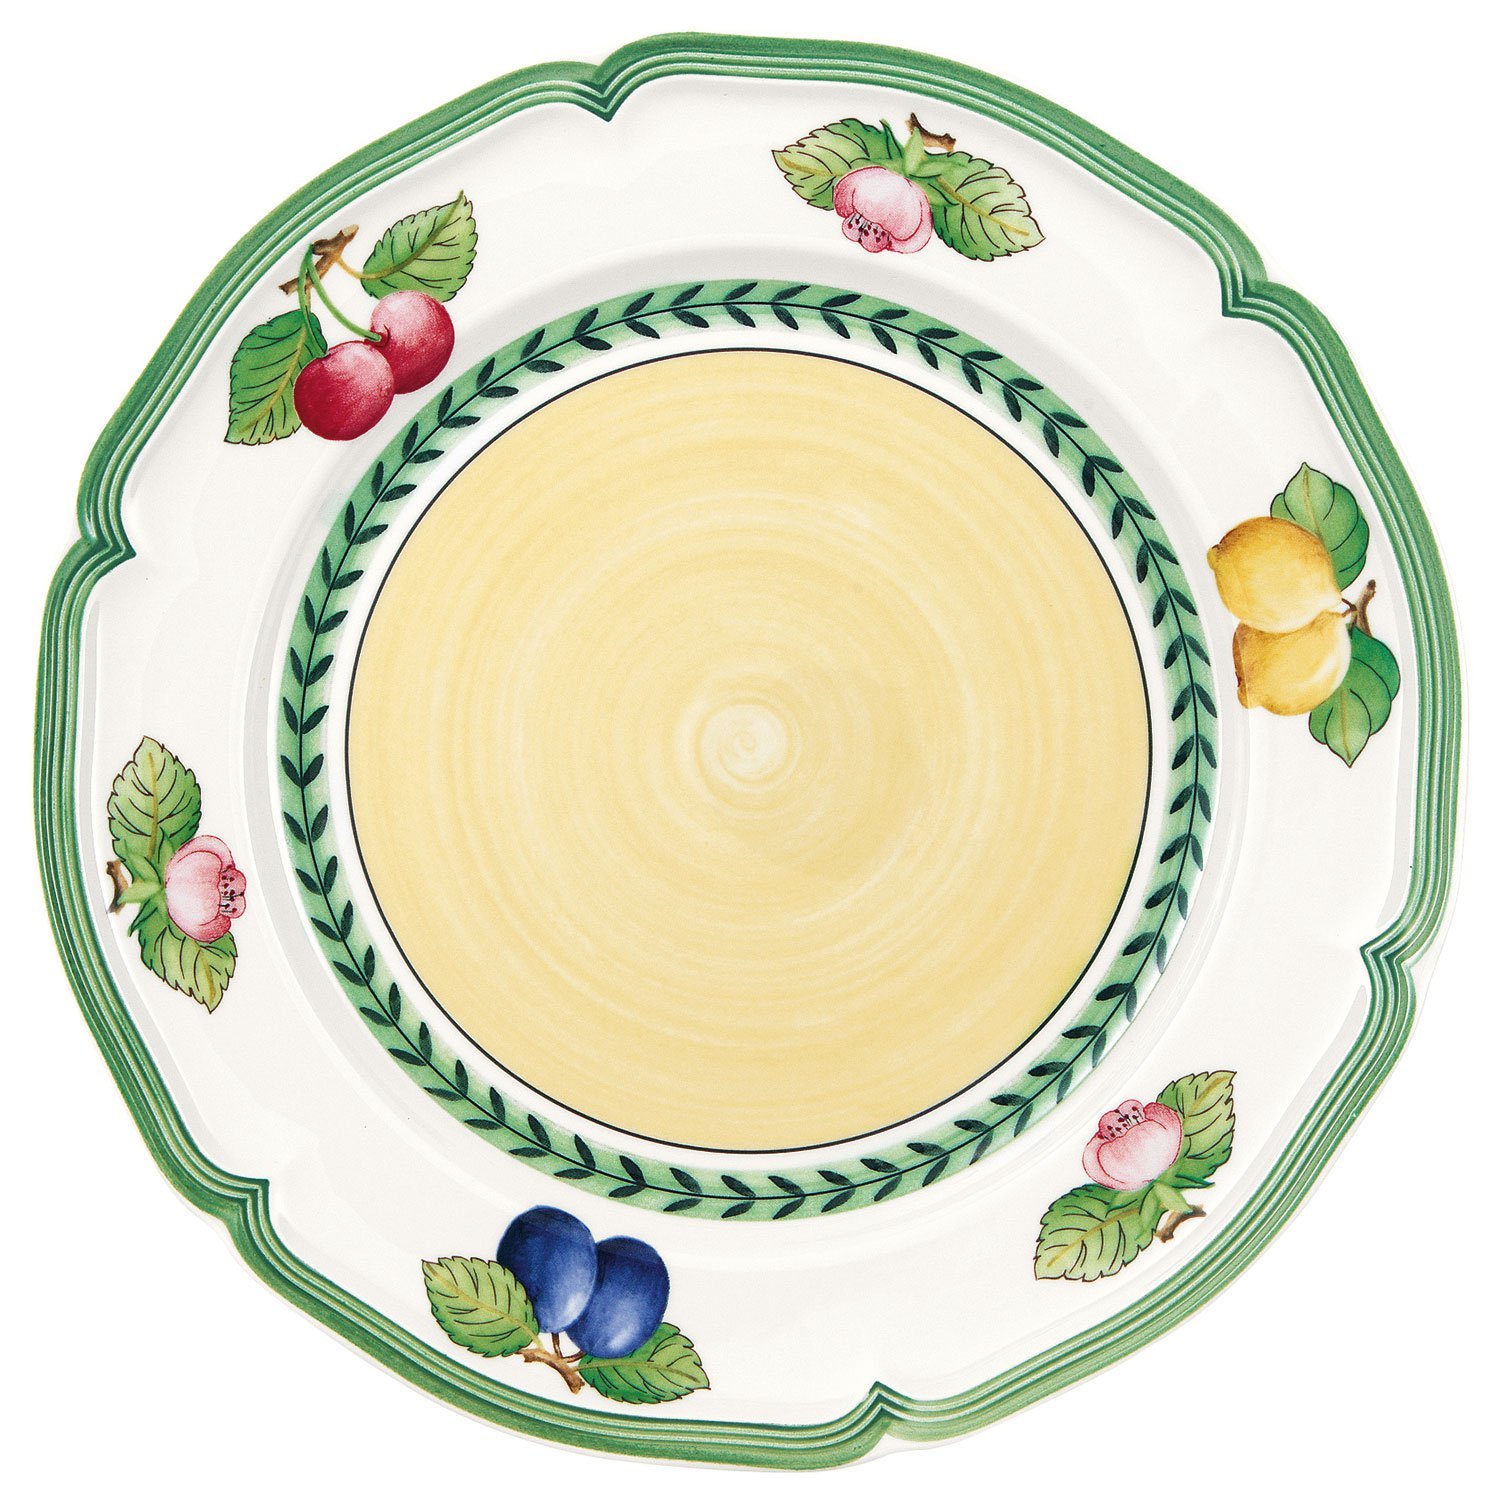 Салатная тарелка 21 см, French Garden Fleurence
https://spb.v-b.ru
г.Санкт-Петербург
eshop@v-b.spb.ru
+7(812)3801977